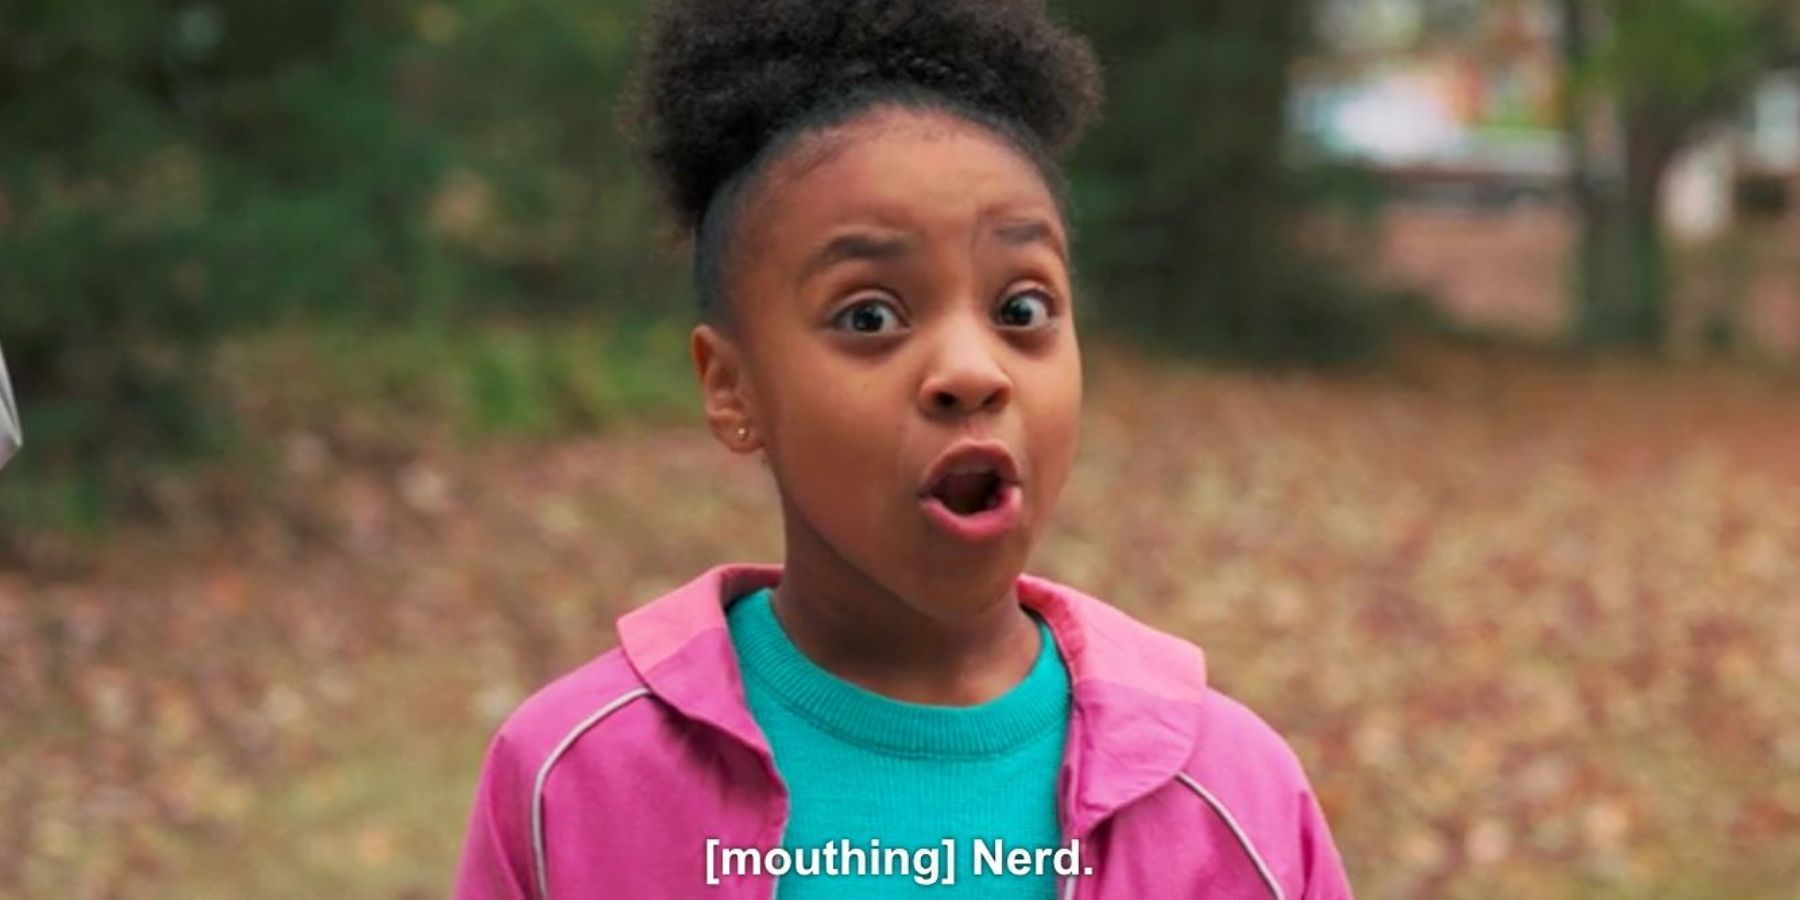 Priah Ferguson as Erica talking about nerds in Stranger Things